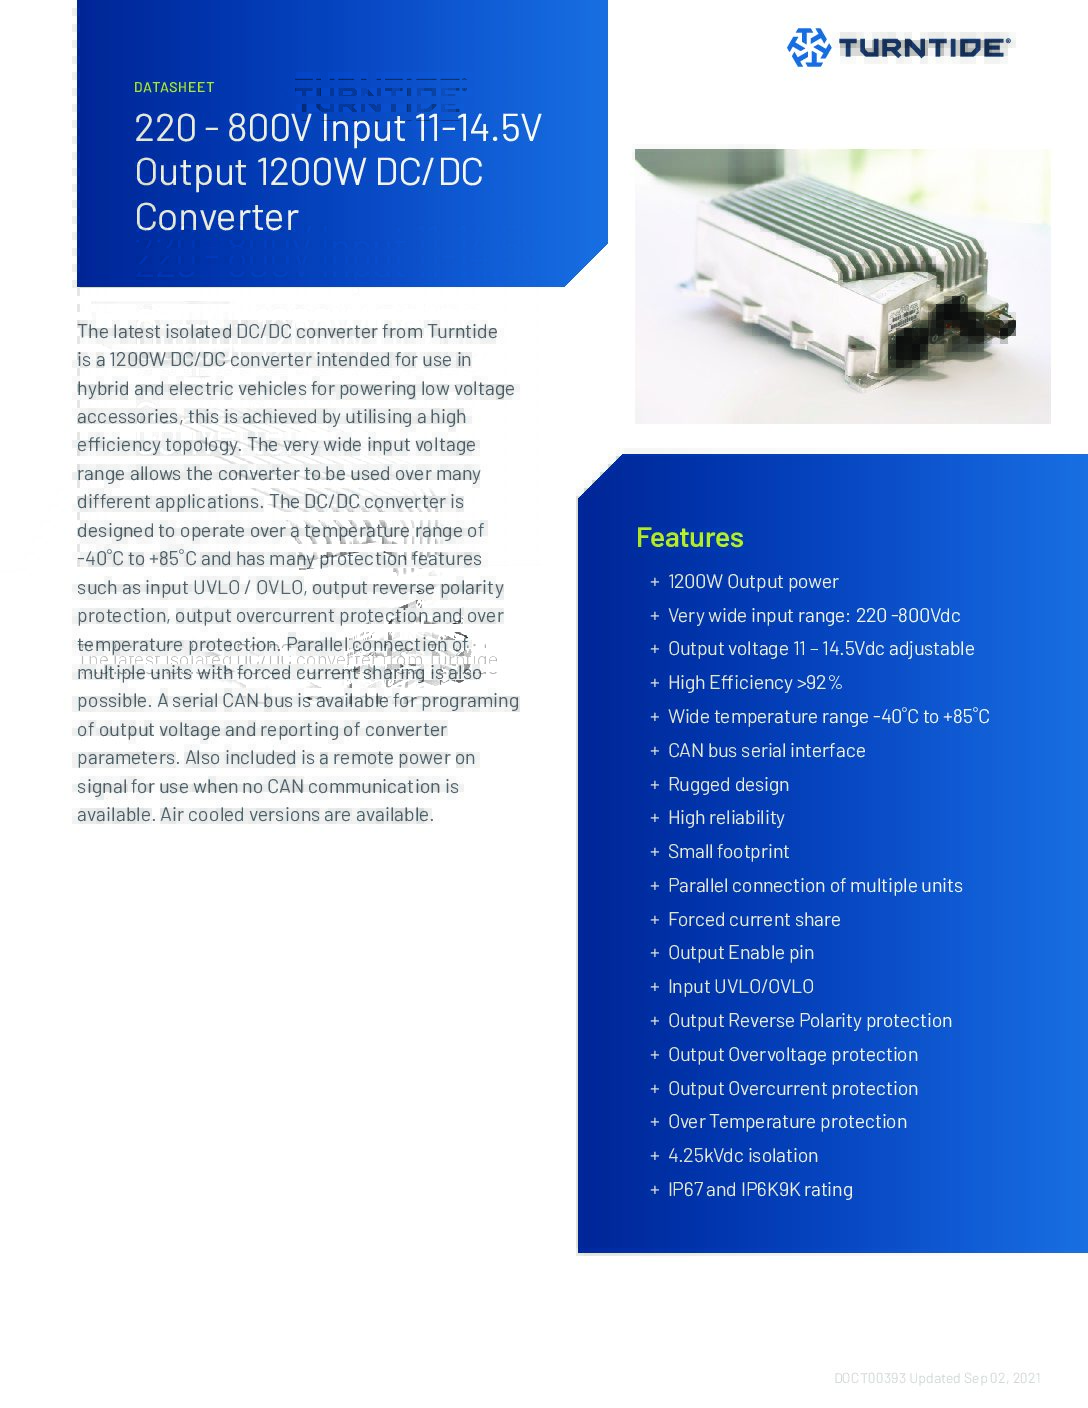 DC/DC Converter 220-800V Input 11-14.5V Output (1200W) Asset Cover